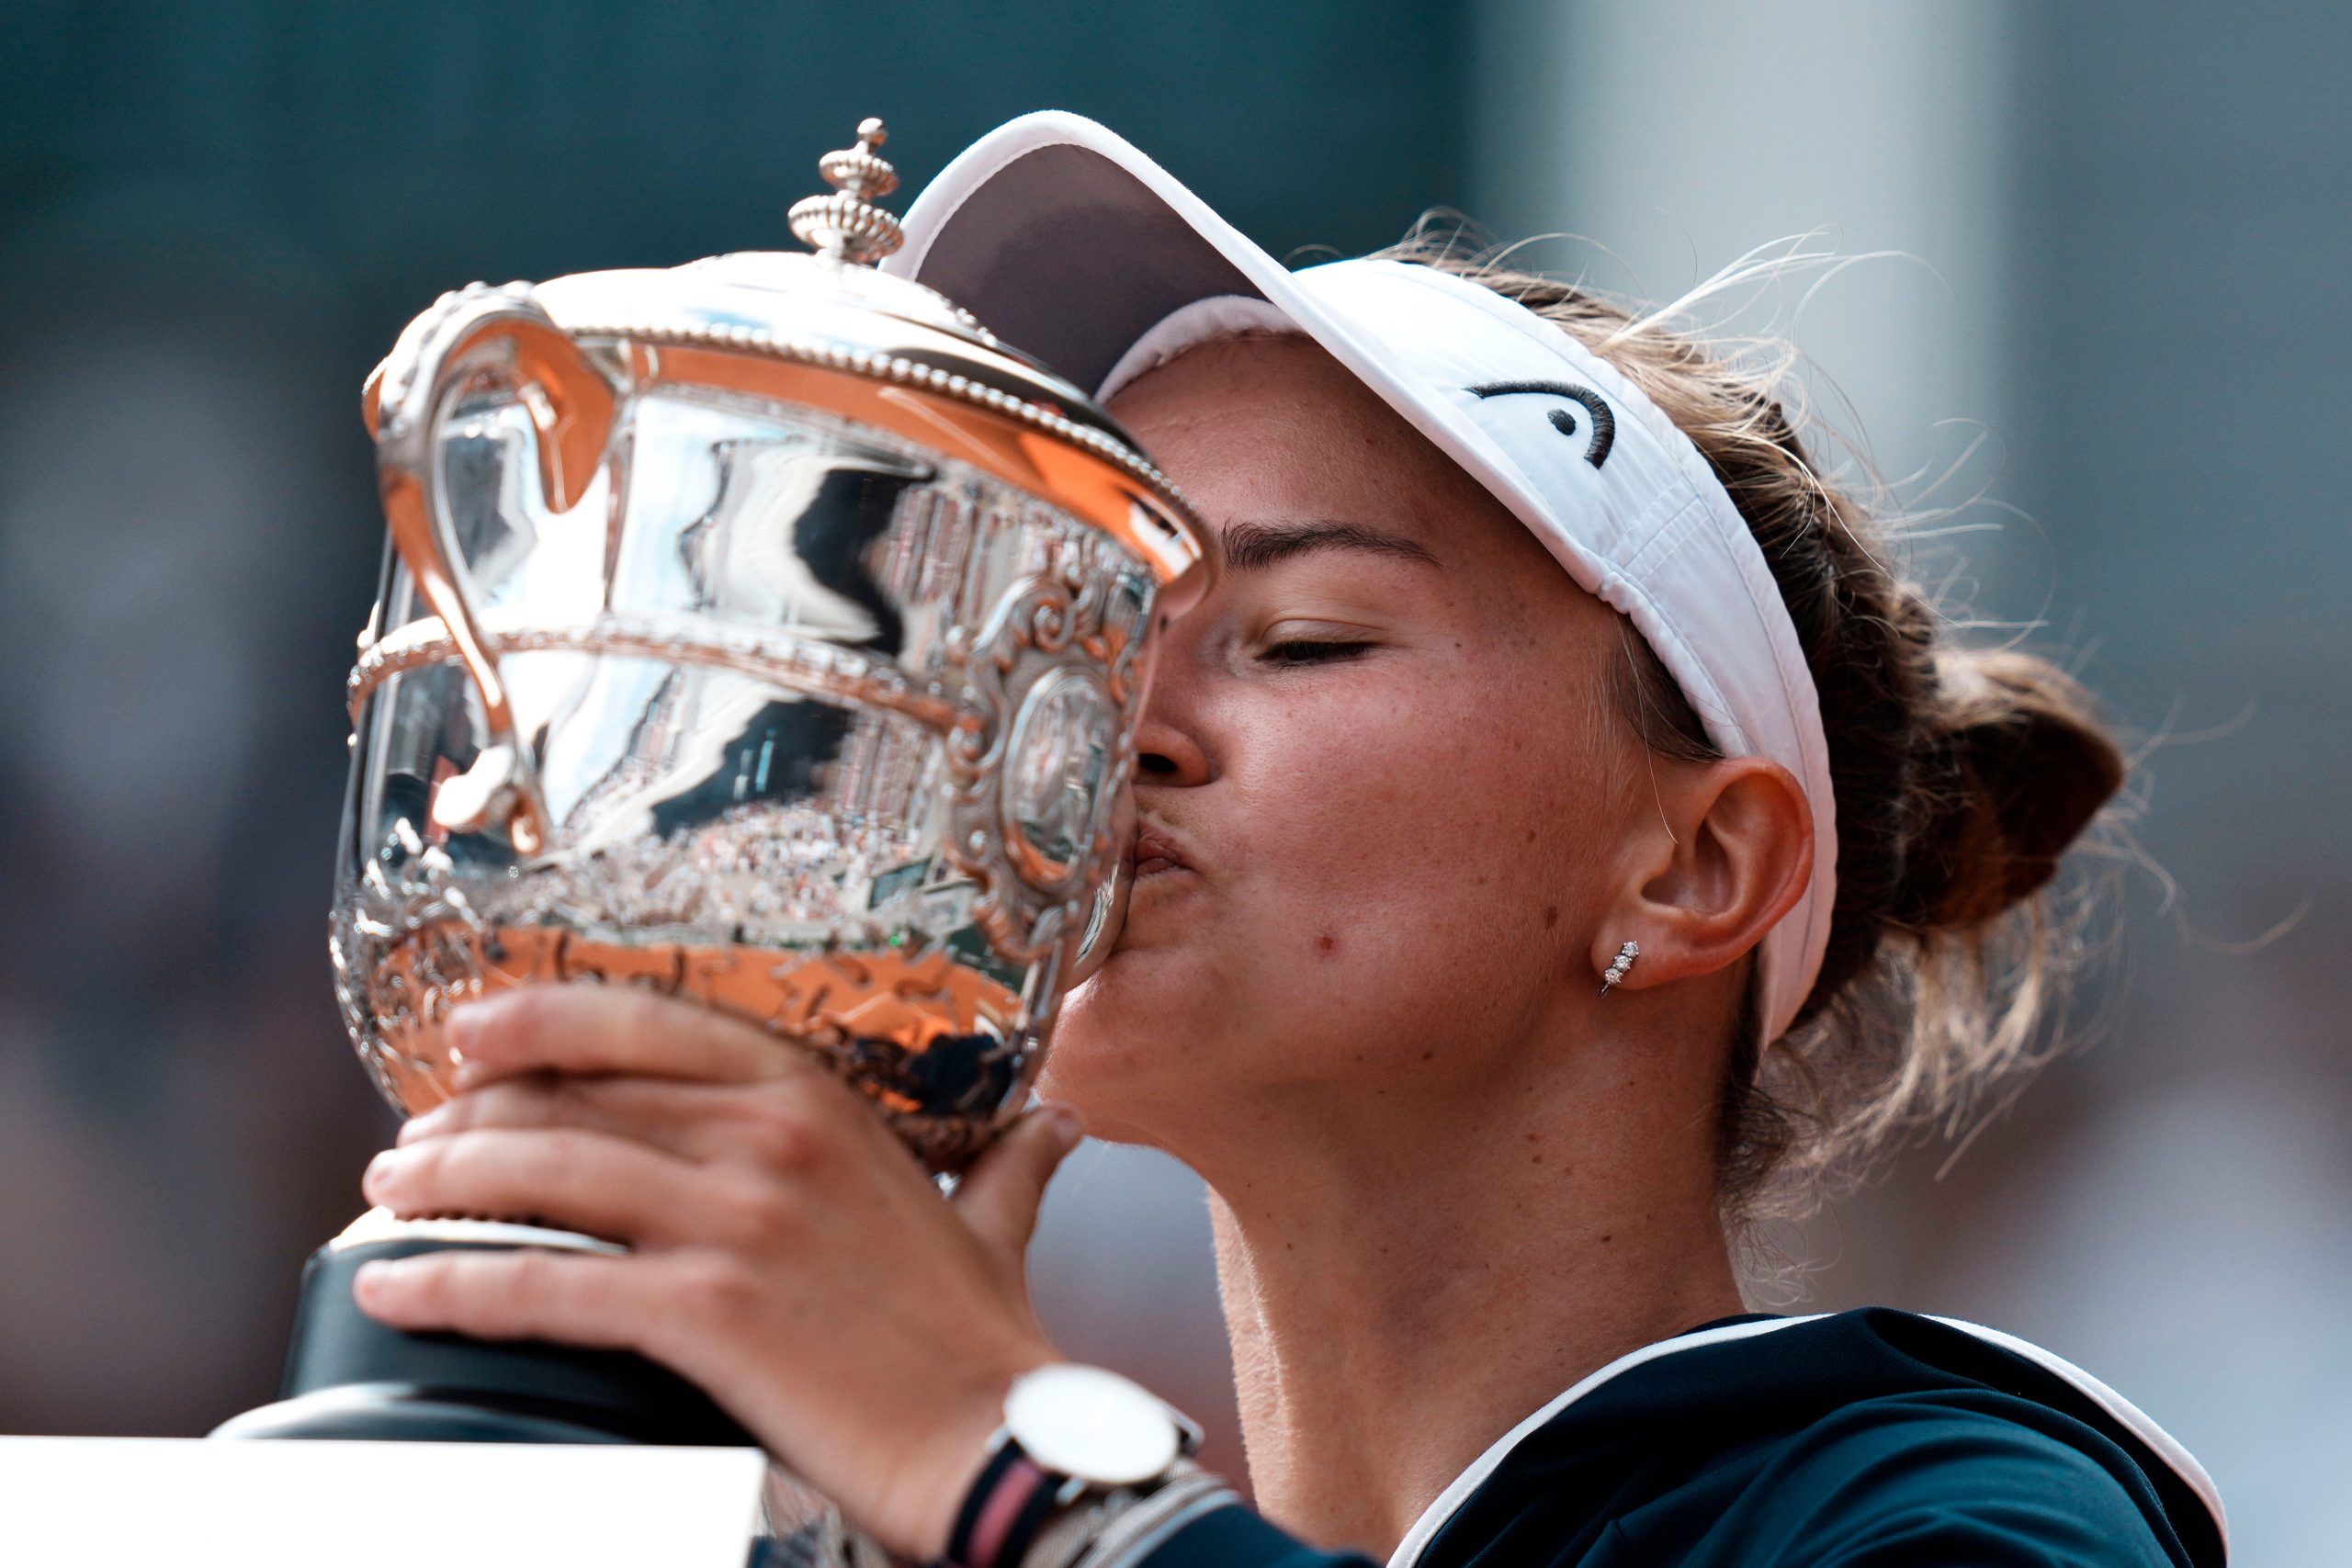 French Open 2022: Can Barbora Krejcikova defend her title?